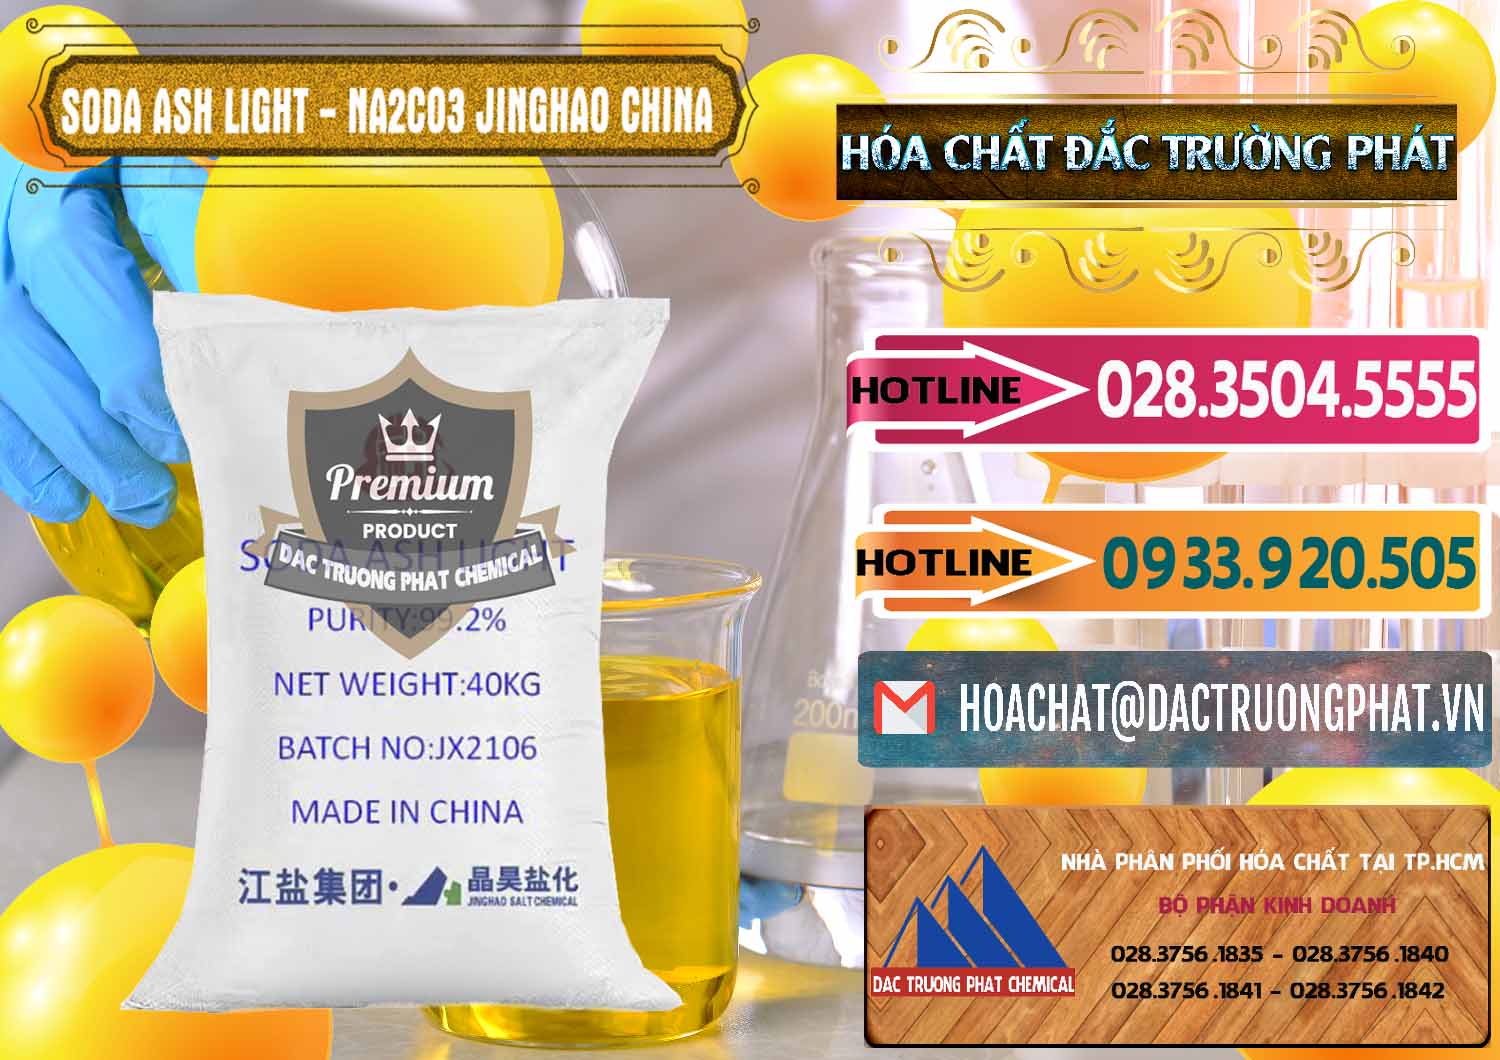 Nơi bán - phân phối Soda Ash Light - NA2CO3 Jinghao Trung Quốc China - 0339 - Nơi chuyên kinh doanh - phân phối hóa chất tại TP.HCM - dactruongphat.vn